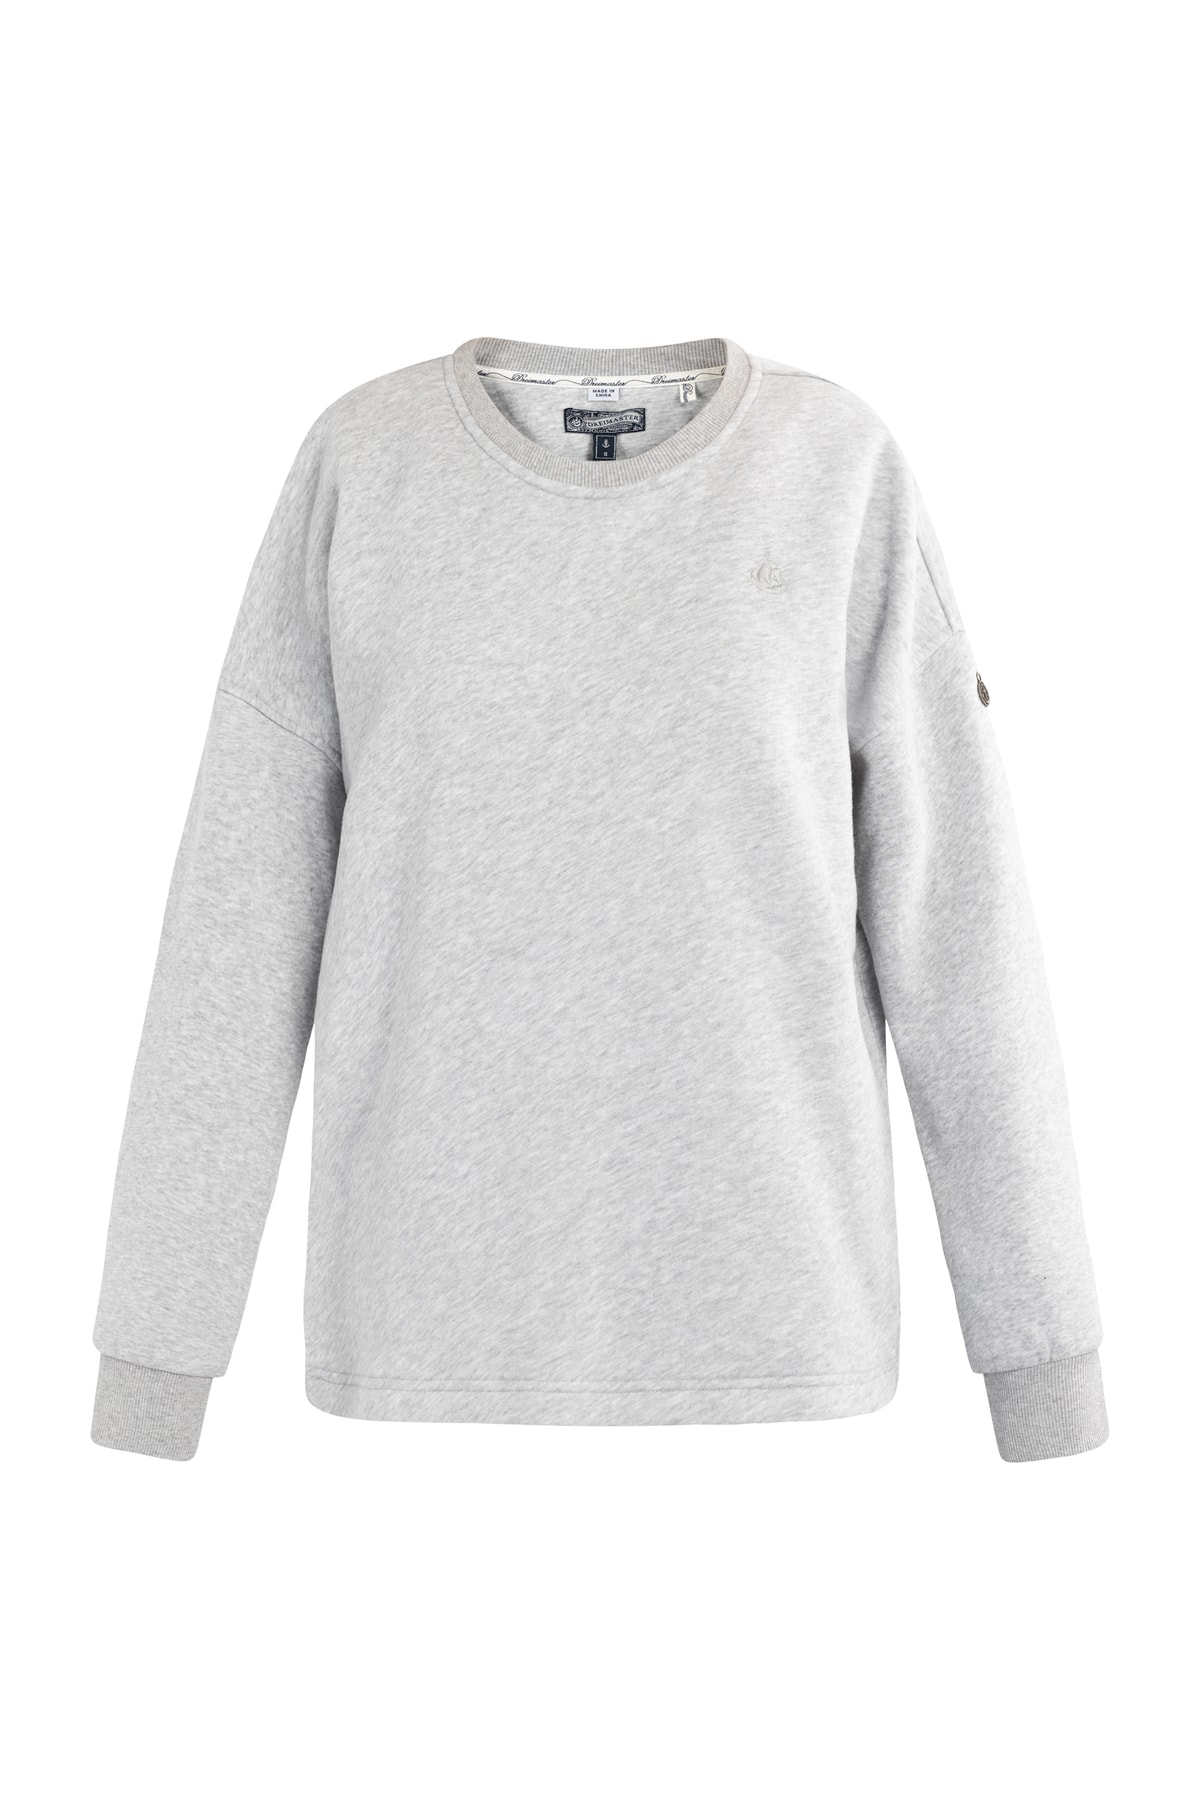 Dreimaster Sweatshirt Grau Relaxed Fit Fast ausverkauft